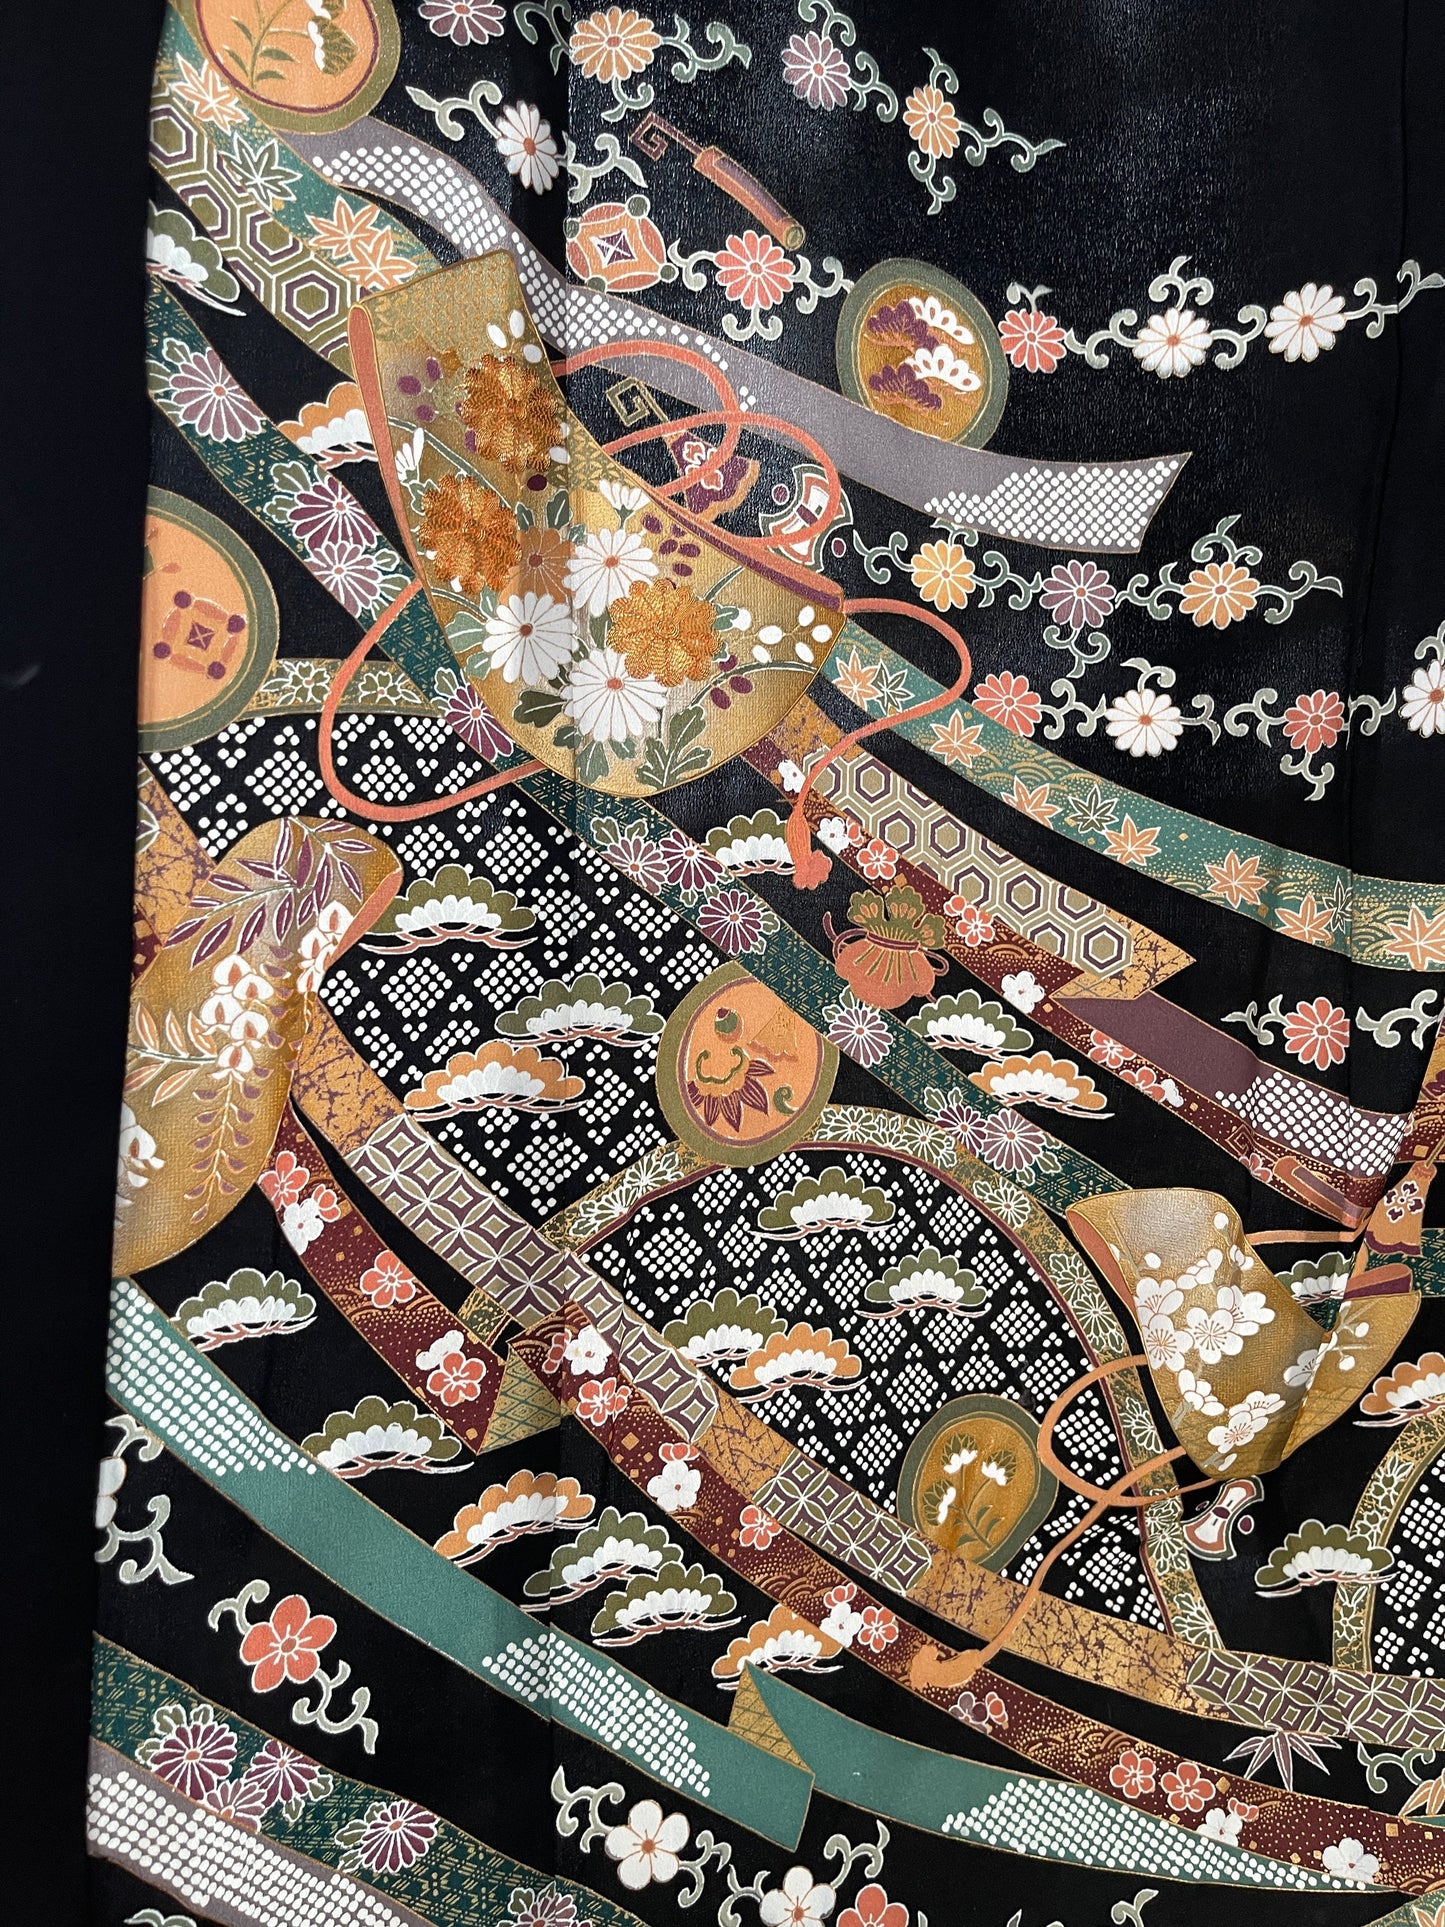 [بالنسبة لأولئك الذين يبحثون عن هدايا بأفكار للأشخاص المهمين في الخارج] ، يعتبر Kimono Abaya ، الذي يحتوي على واحد فقط في العالم مسرورًا من قبل المسلمين ، مثاليًا للهدايا التذكارية الخاصة للأحباء.